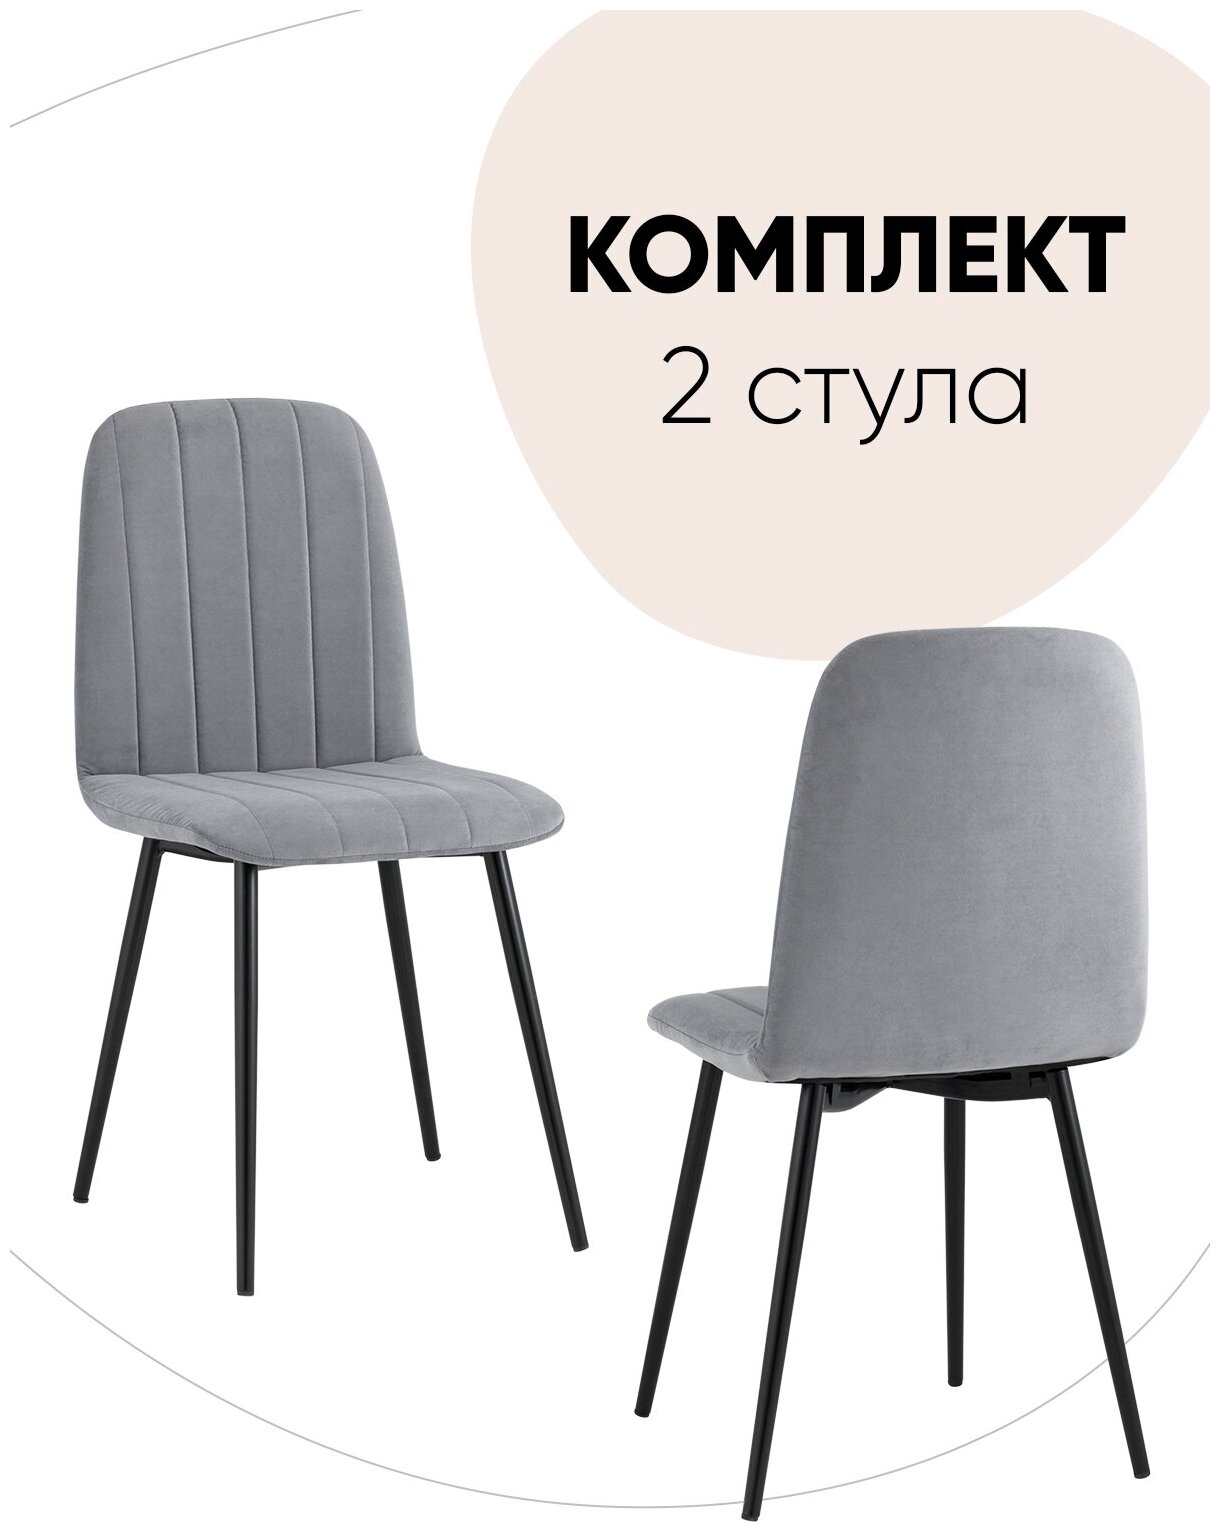 Комплект стульев 2 шт Easy велюр серый